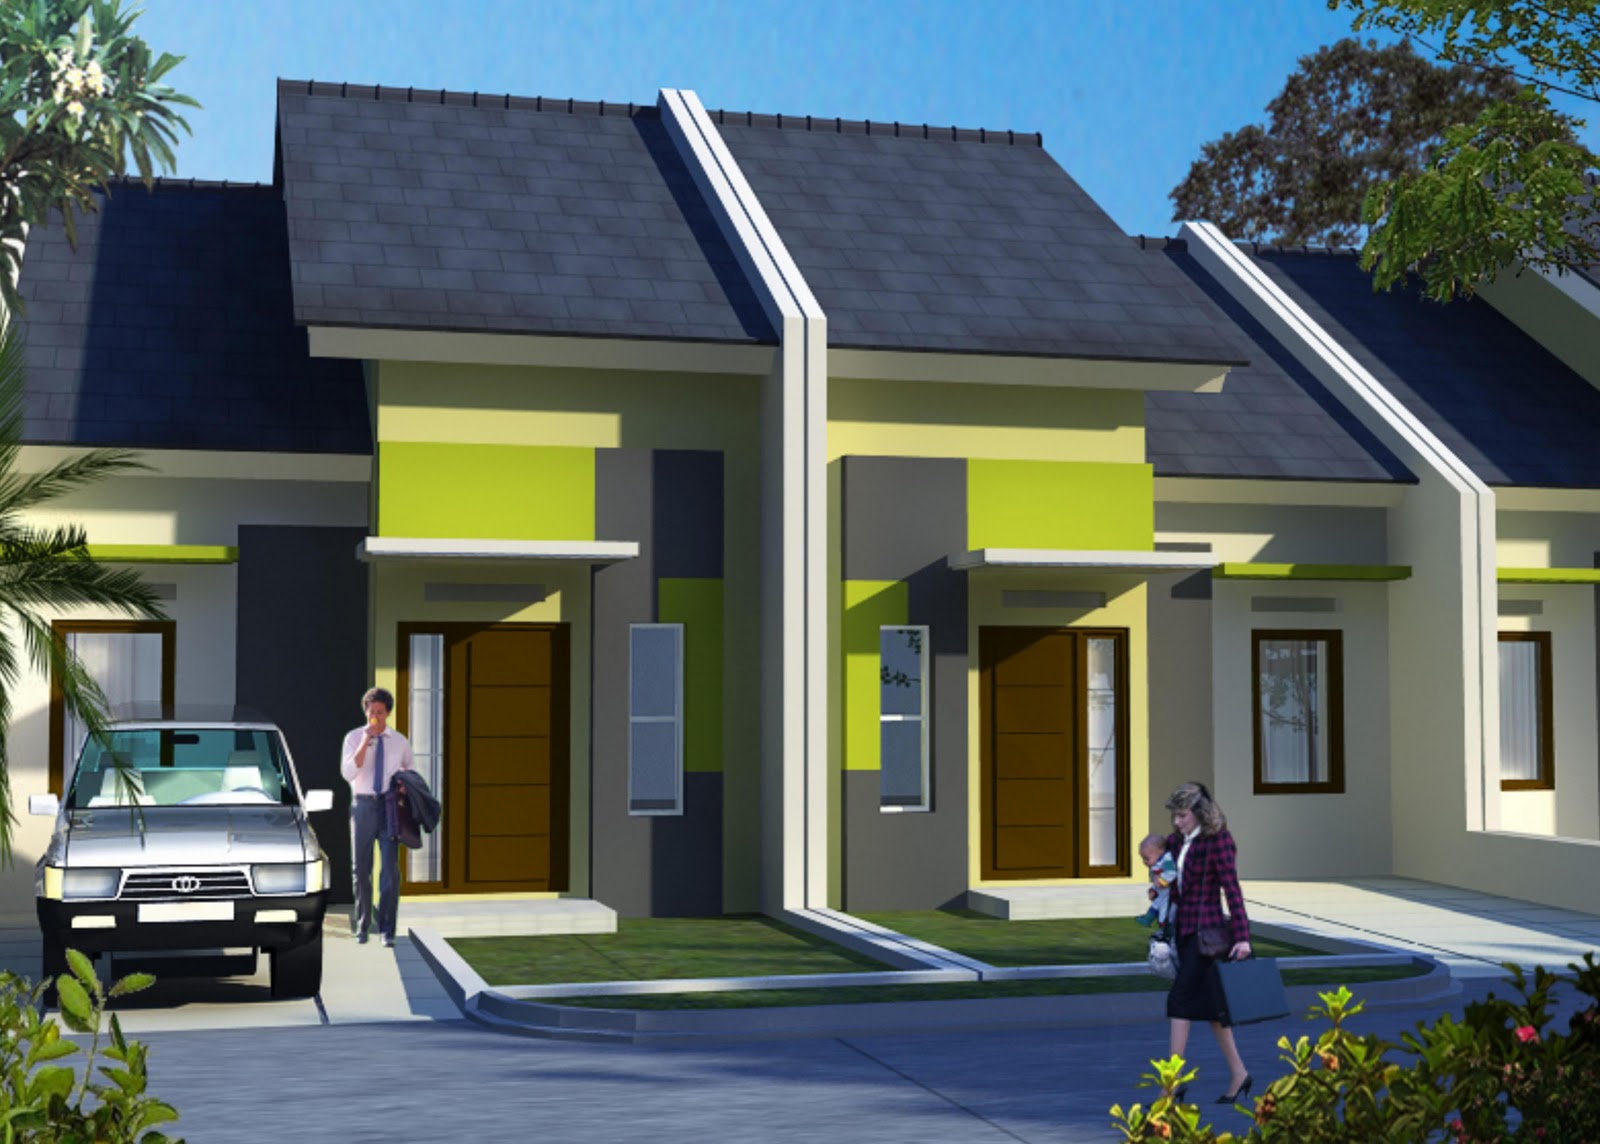  Rumah  Minimalis  Sederhana  Type 36 Dijual Surabaya  Desain 